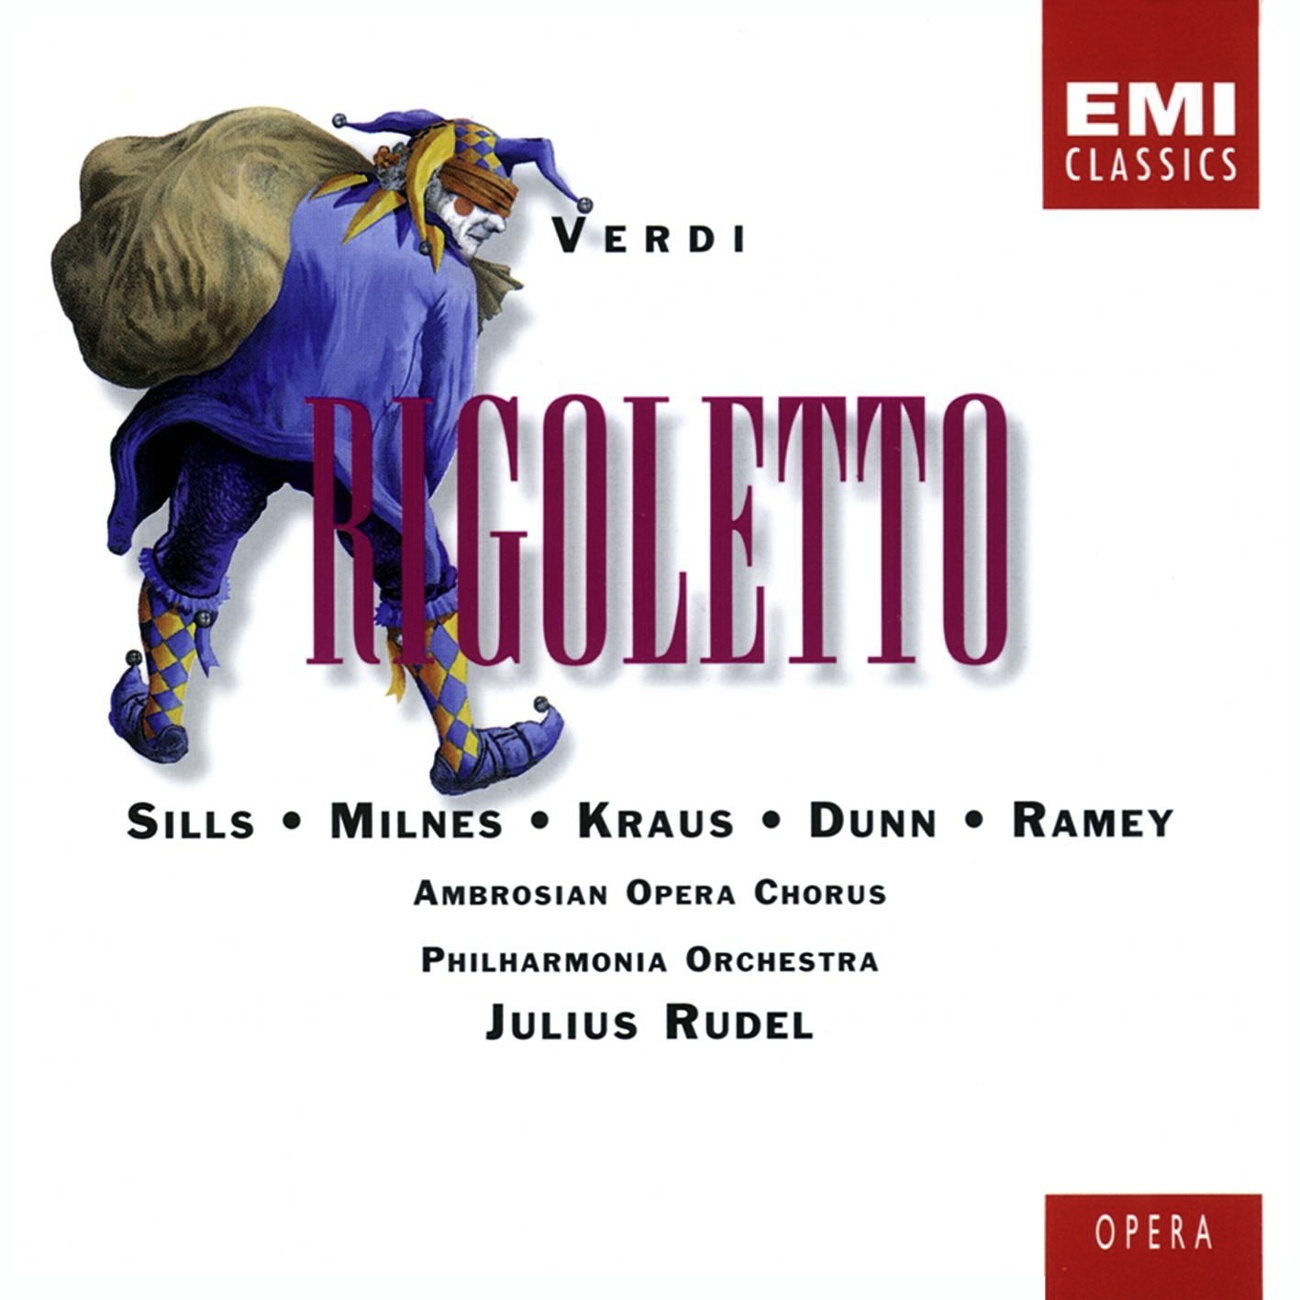 Rigoletto 1996 Digital Remaster, Act 3: La donna e mobile